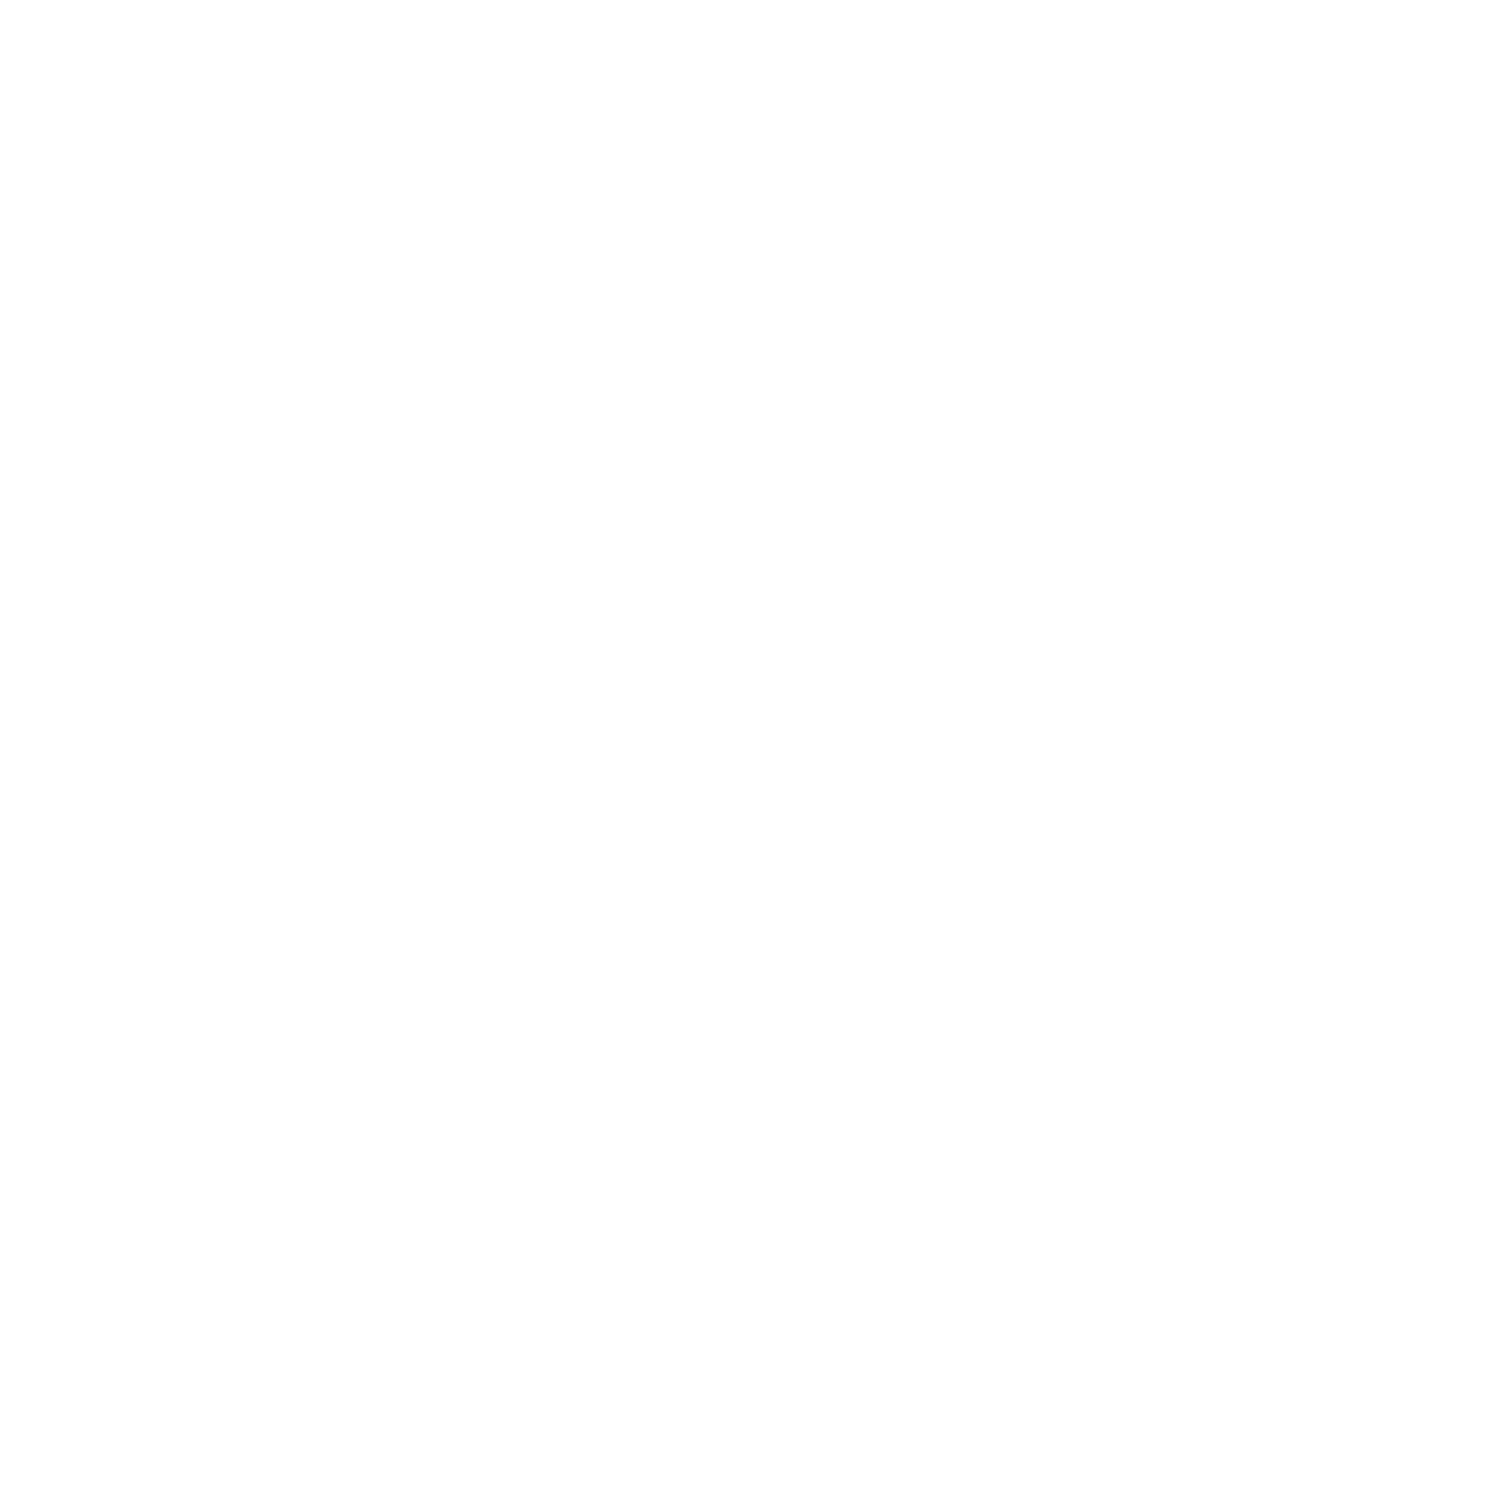 OGFXTRADER